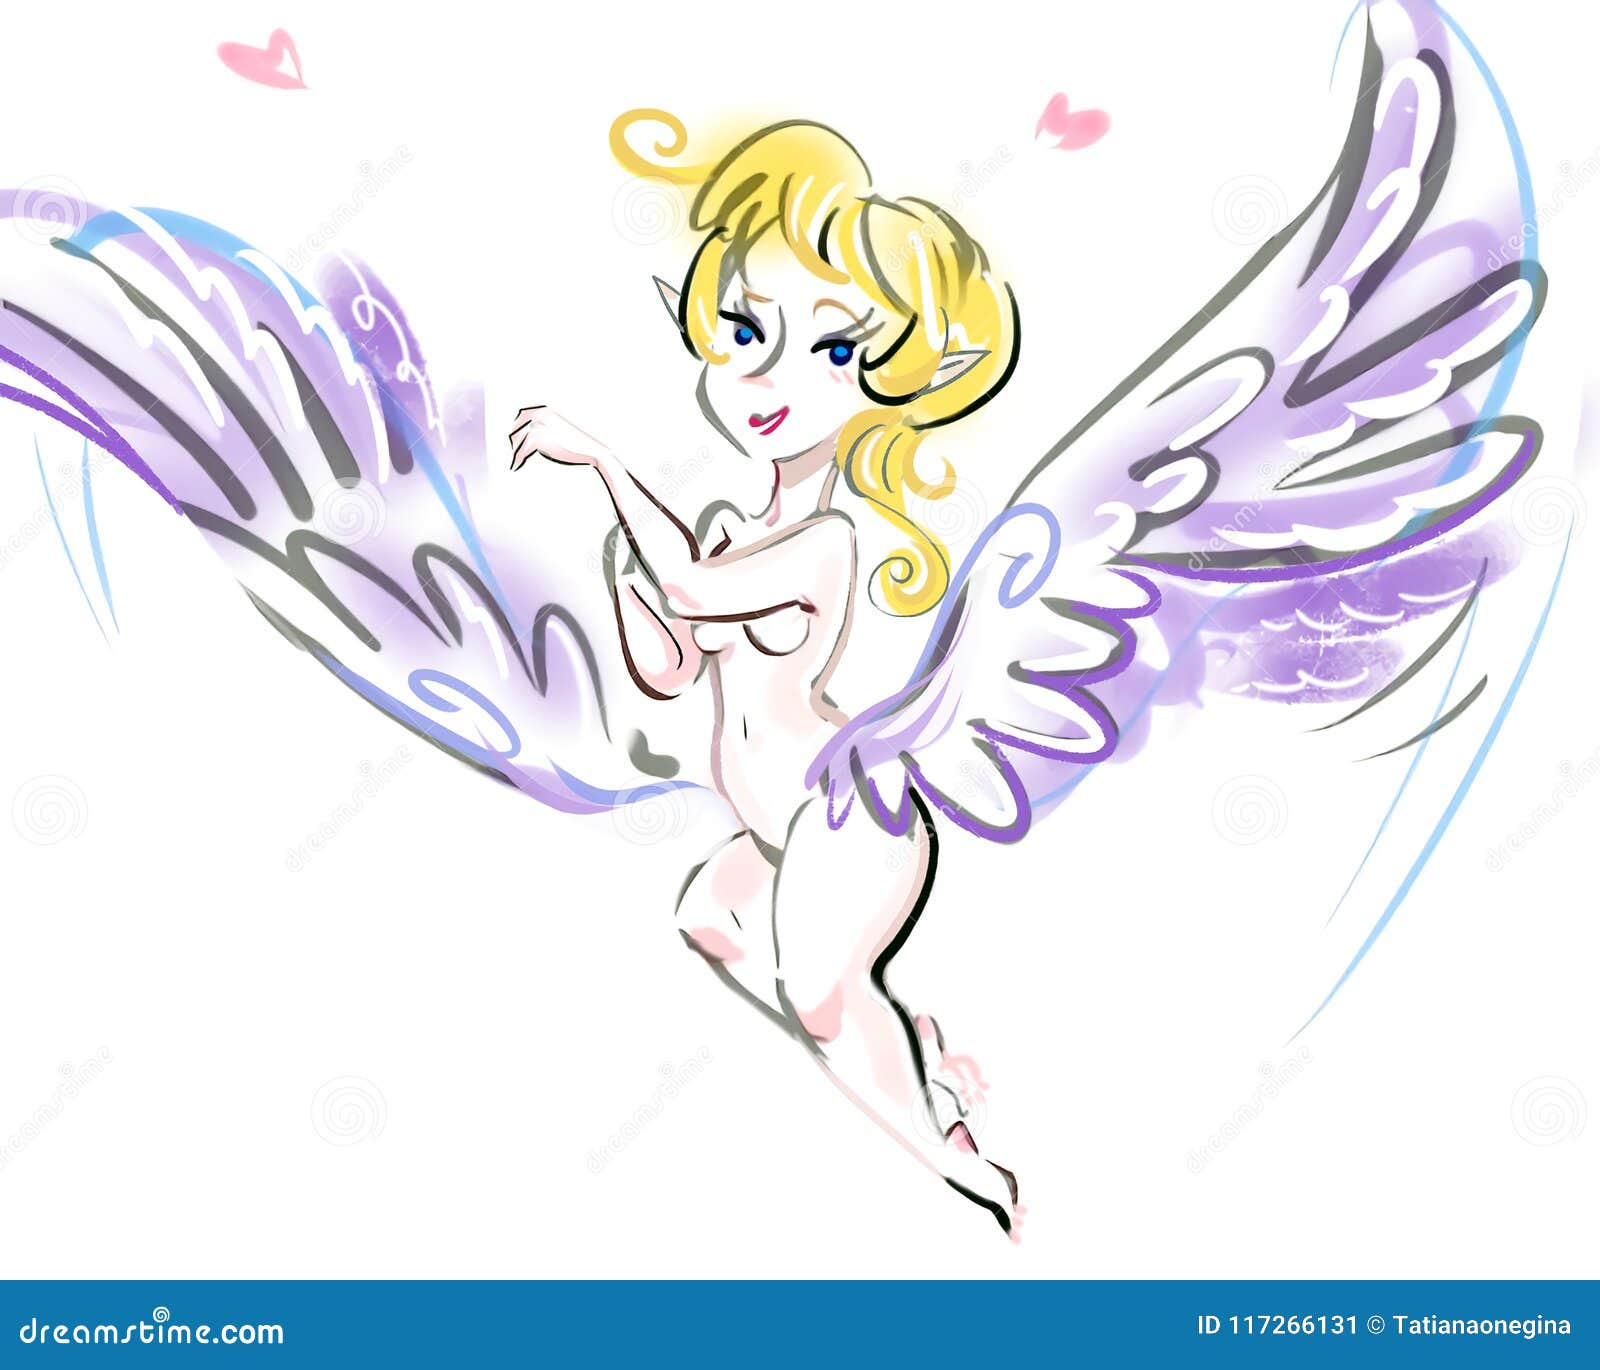 Last Fm Dating Site Desnudo Fairy Decals